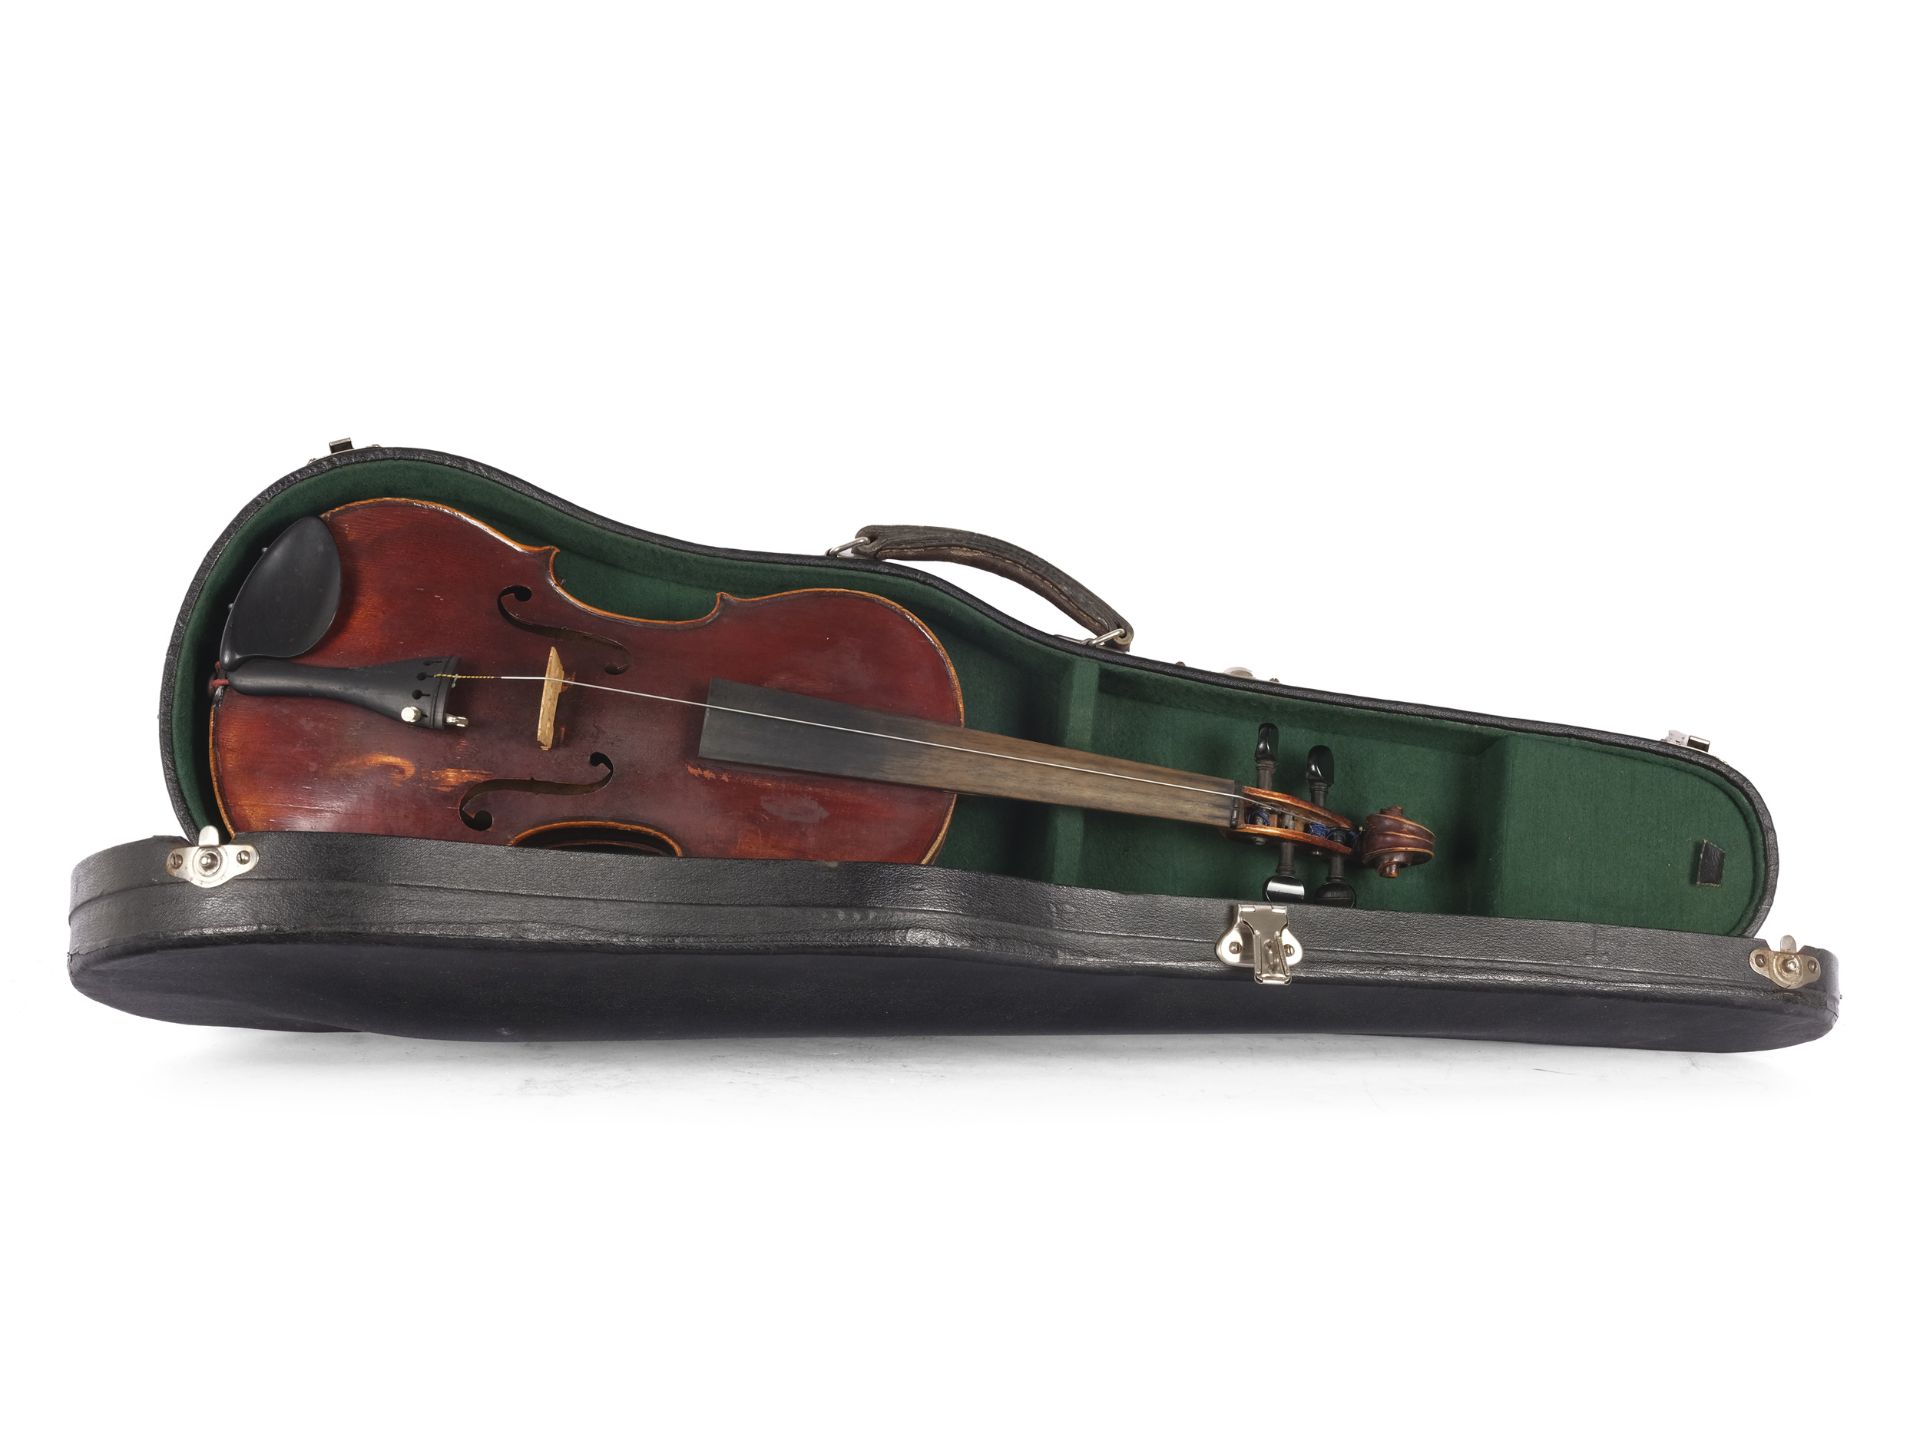 3/4 violin by Neuner and Hornsteiner, Mittenwald